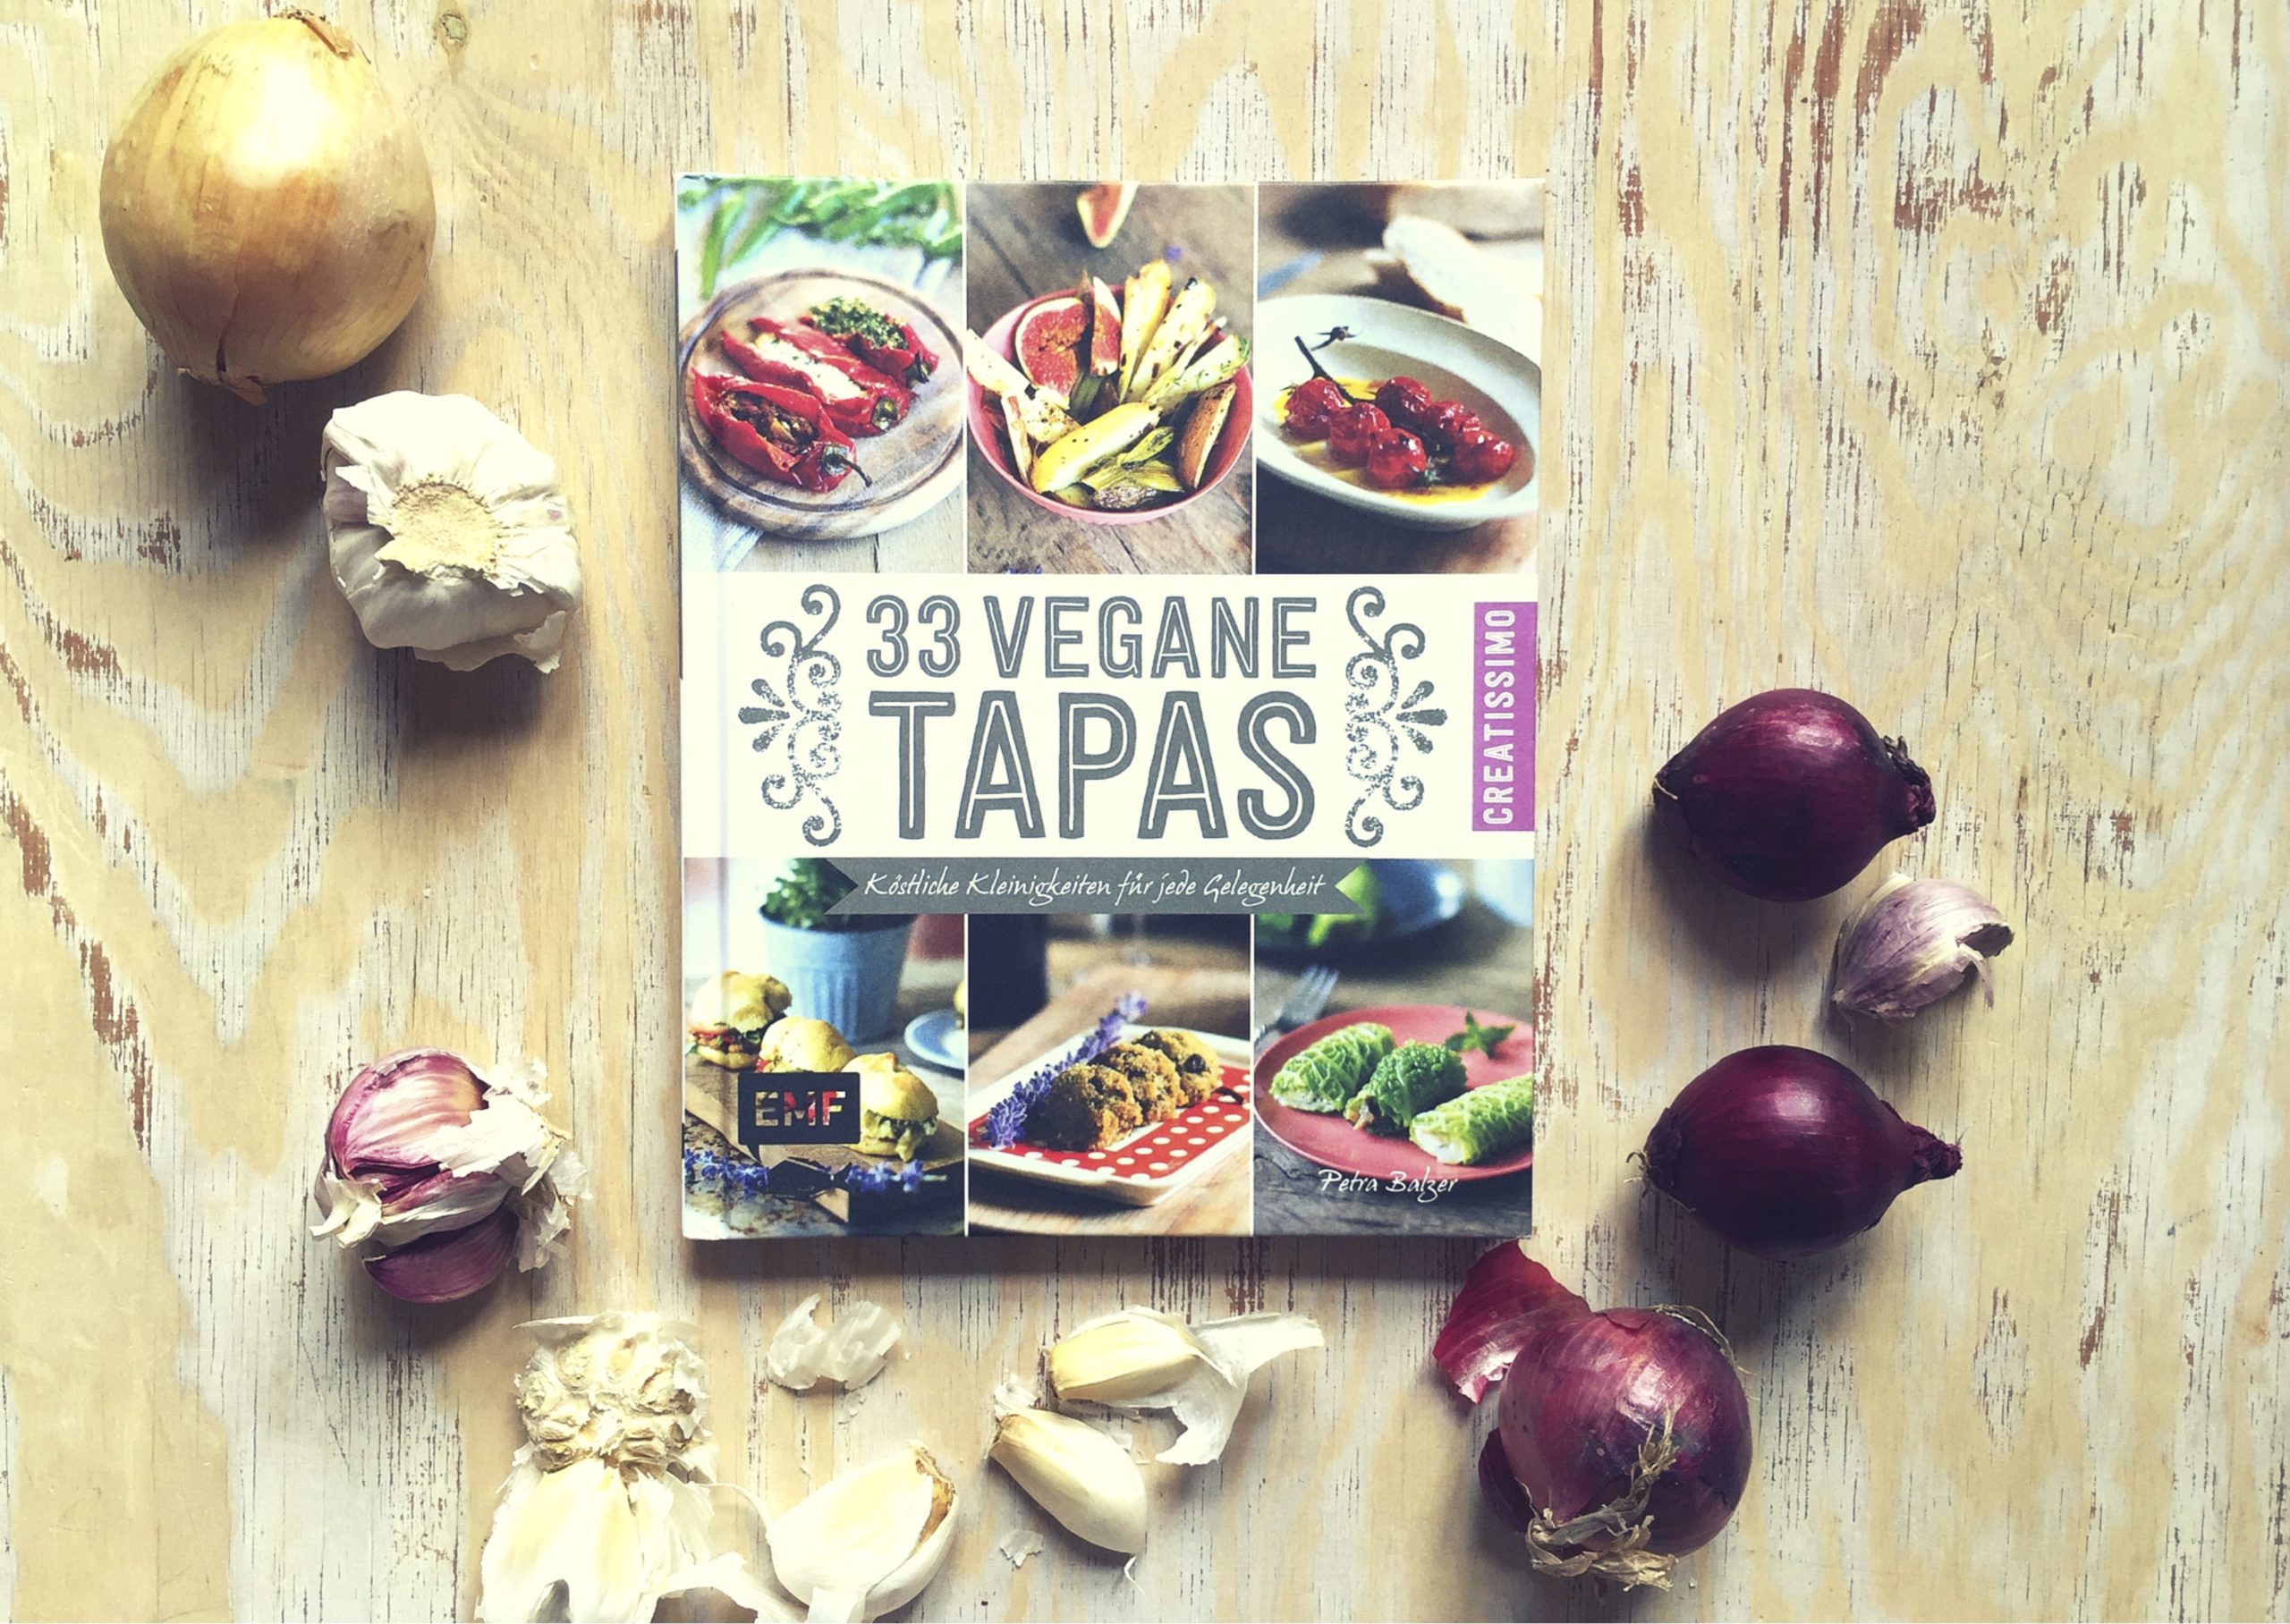 "33 vegane Tapas" von Edition Michael Fischer - auf Pinterest unter https://www.pinterest.com/EMF_Verlag/